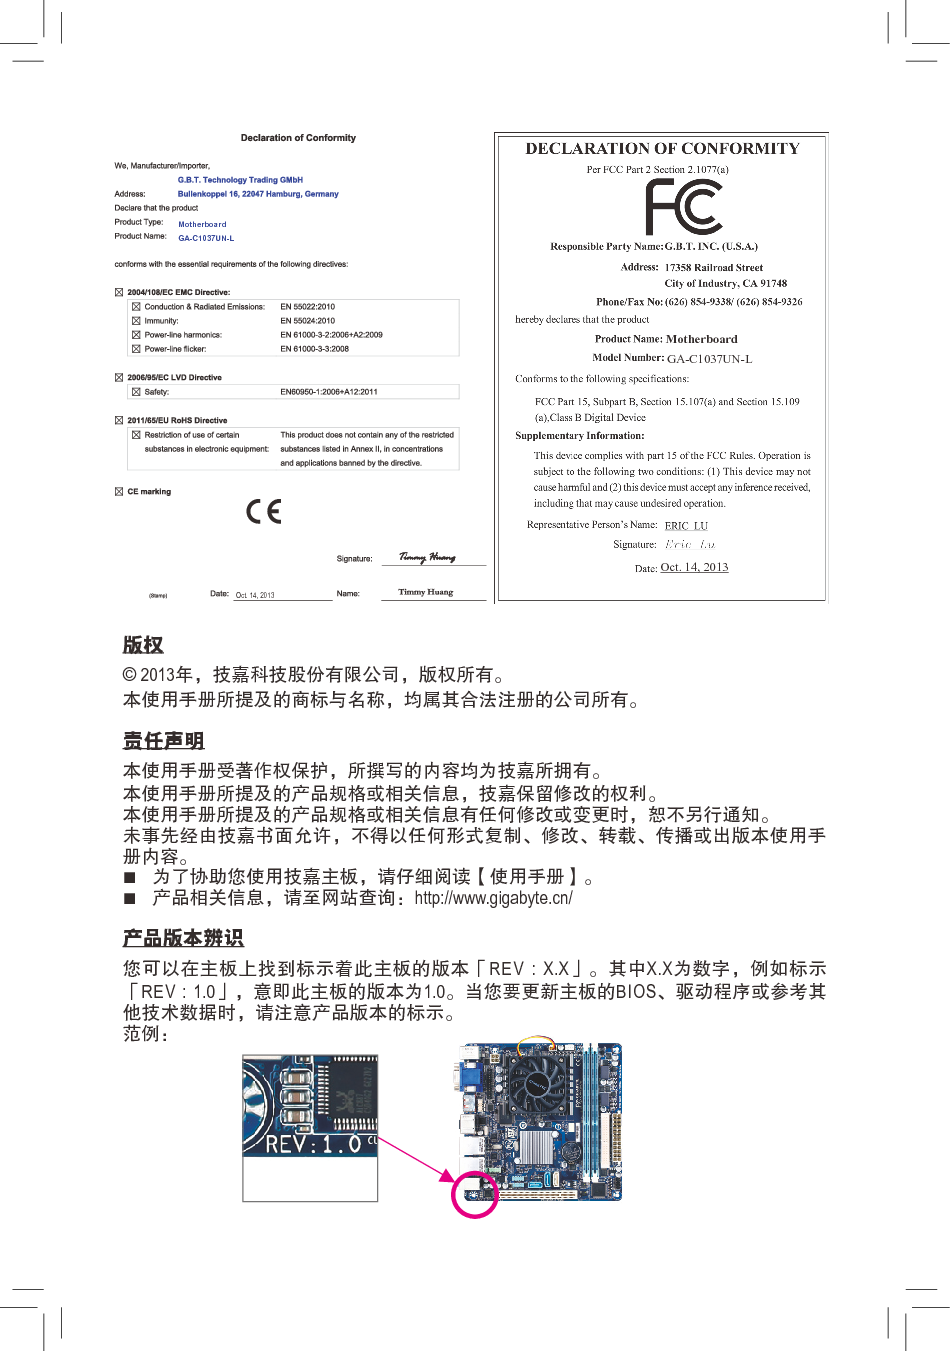 技嘉 Gigabyte GA-C1037UN-L 使用手册 第1页